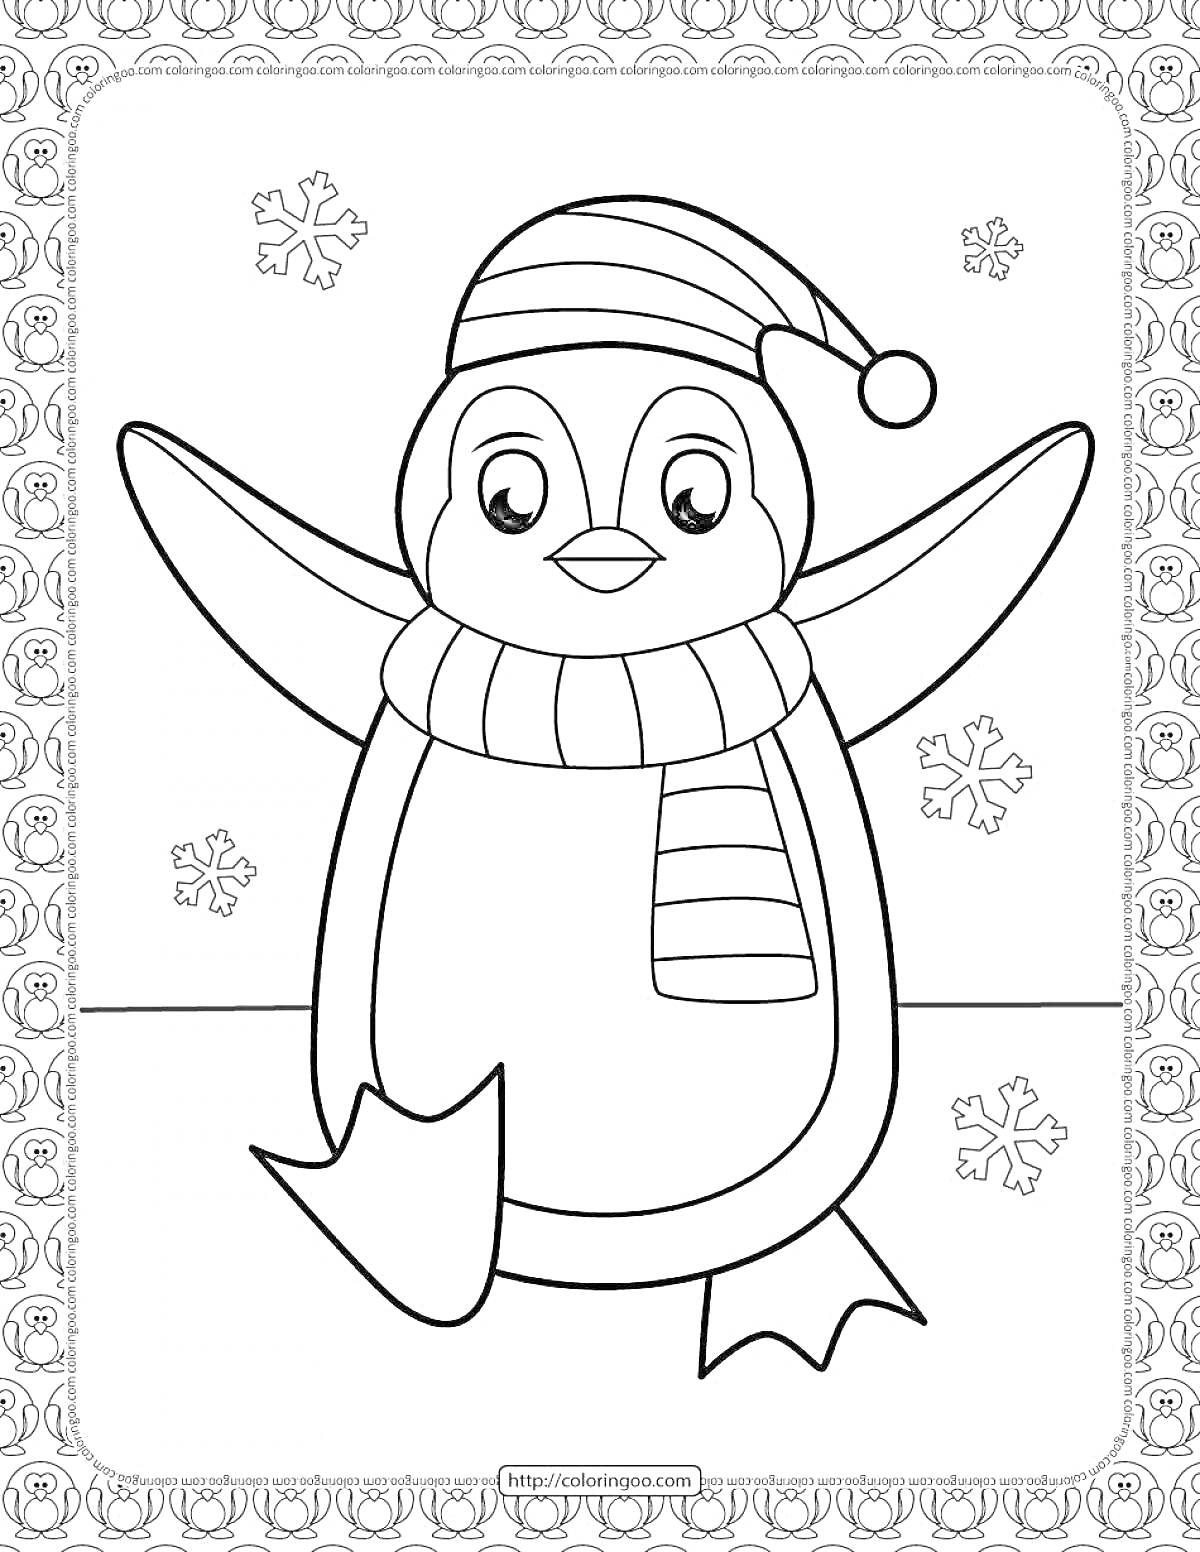 Раскраска Пингвин в шапке и шарфе на фоне снежинок